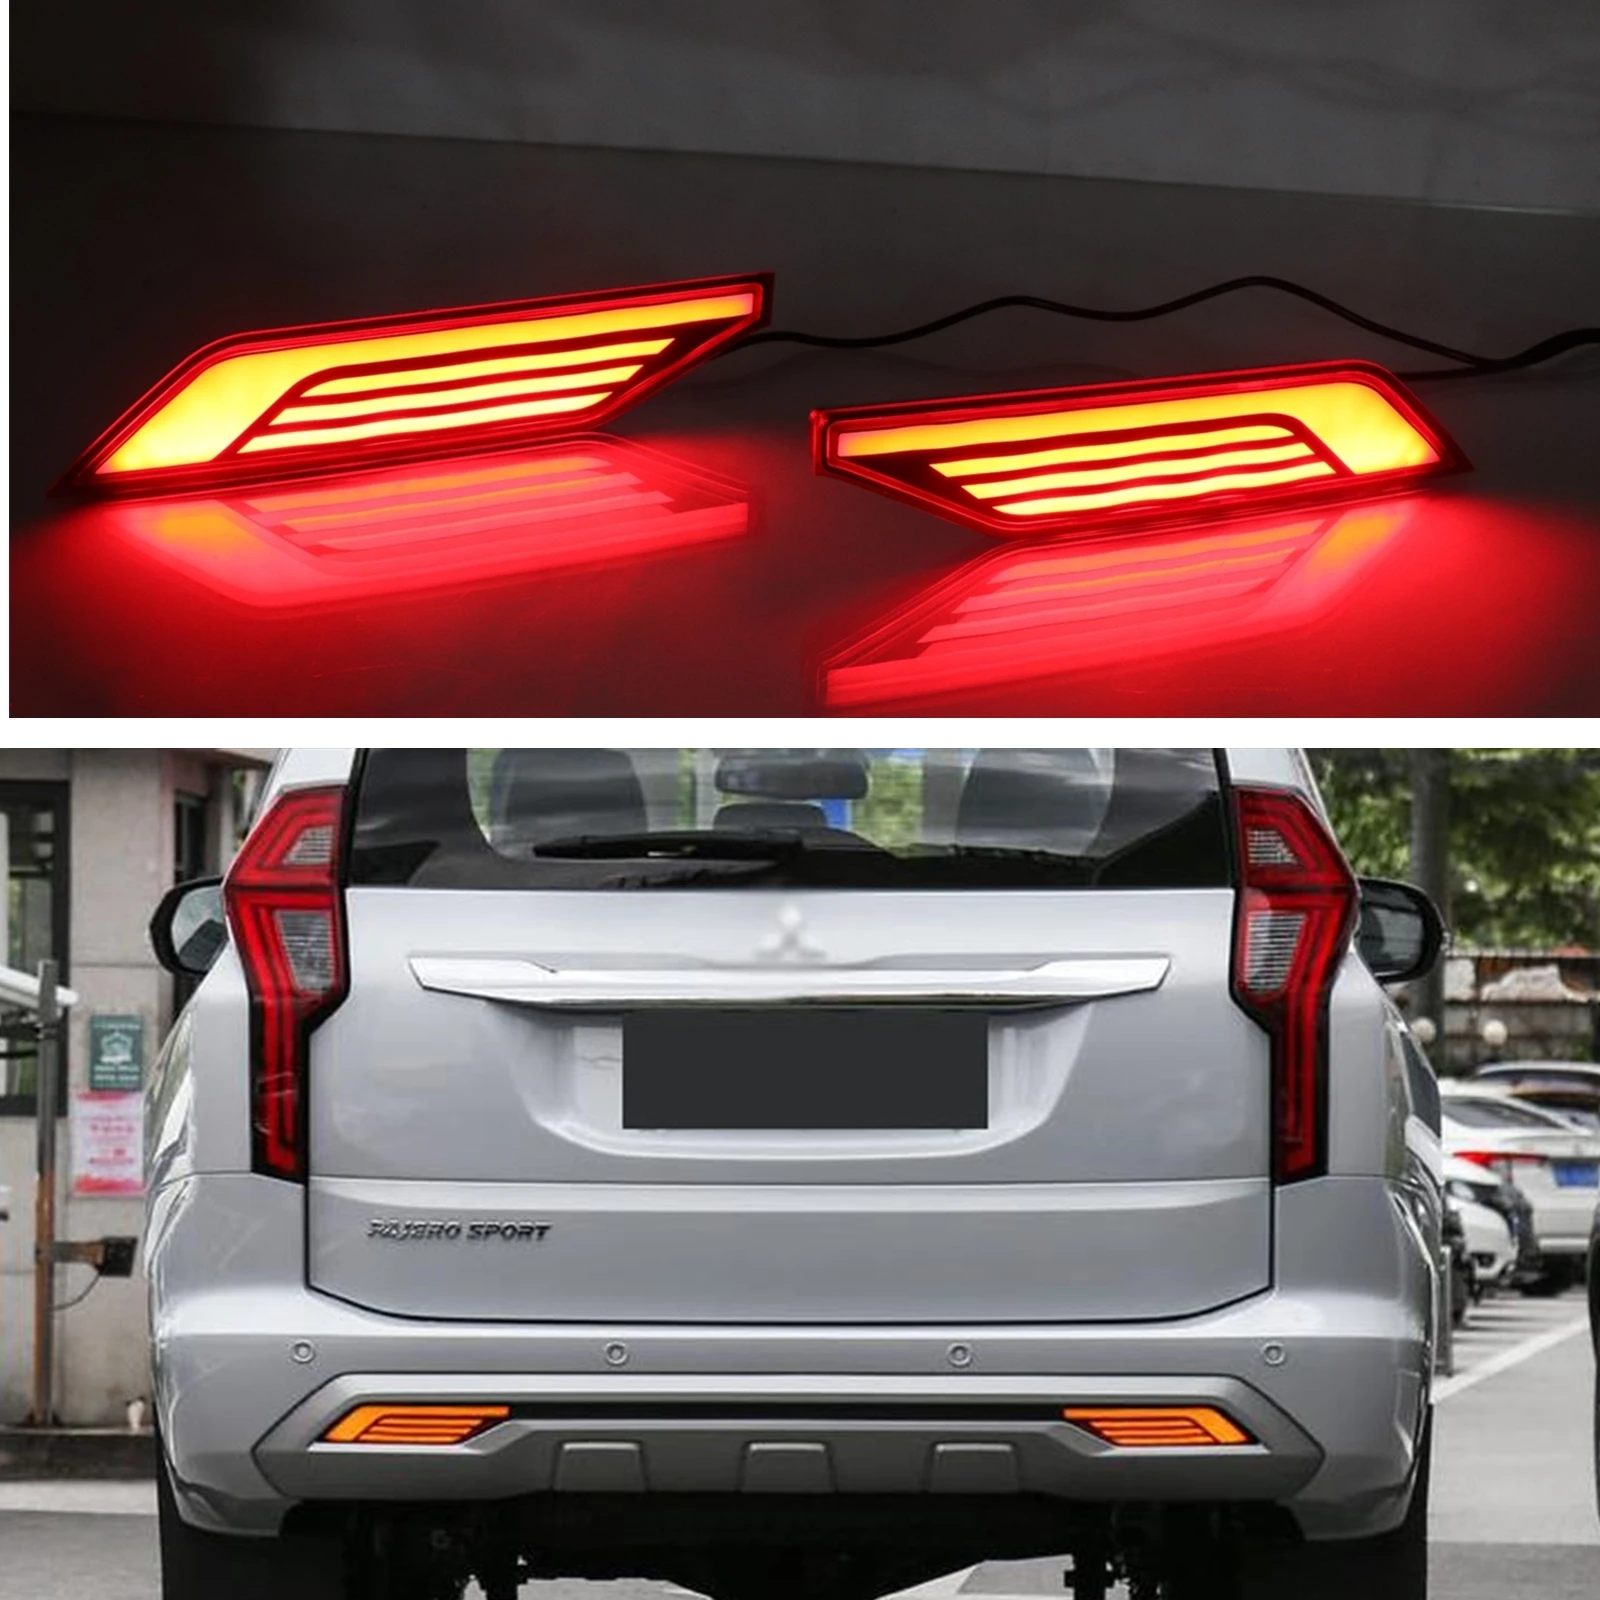 

Светодиодсветильник лампа для заднего бампера автомобиля, стоп-сигнал, отражающая лампа, сигнальный индикатор для Mitsubishi Pajero Shogun 2018-2020 Mustang